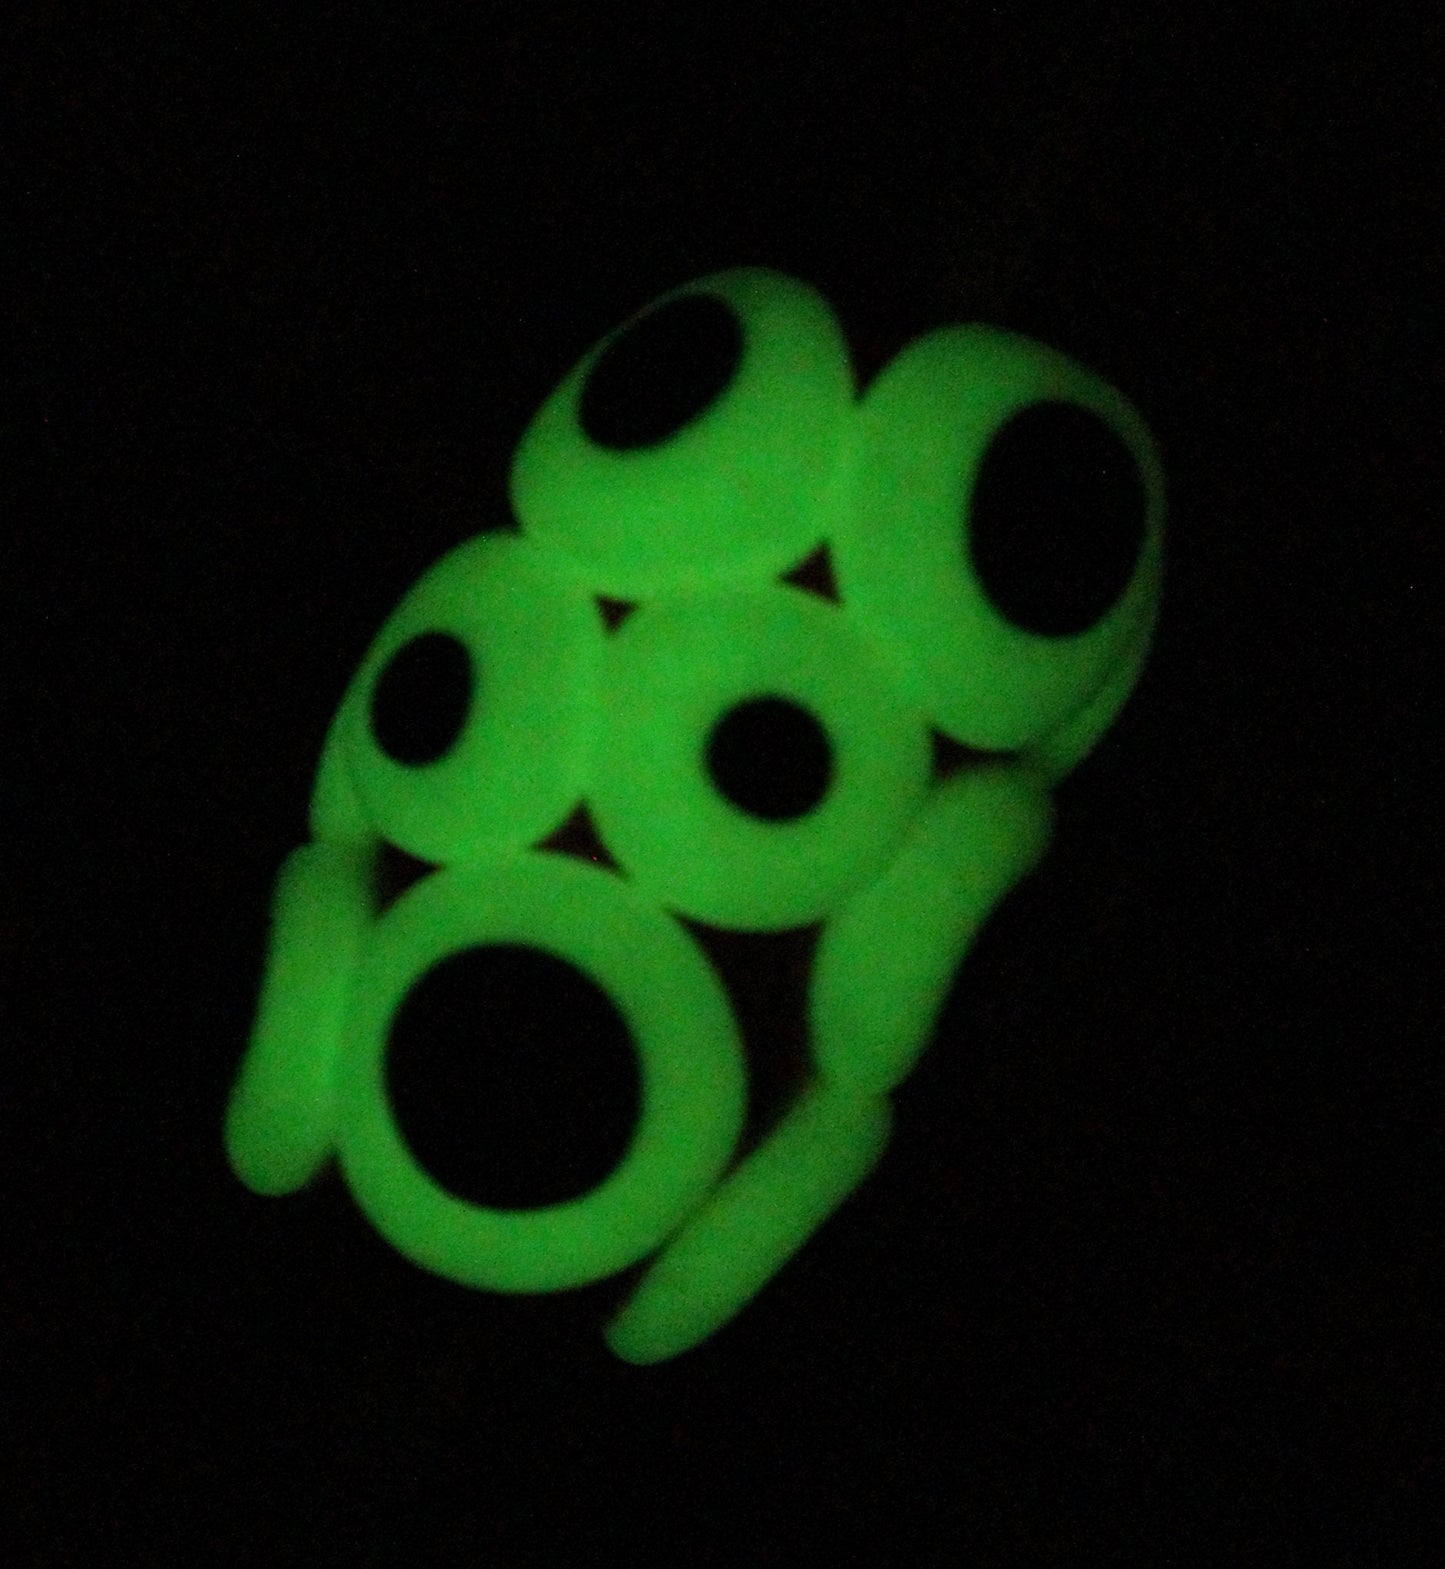 Alien eye bead with 6mm hole - Glow in the Dark